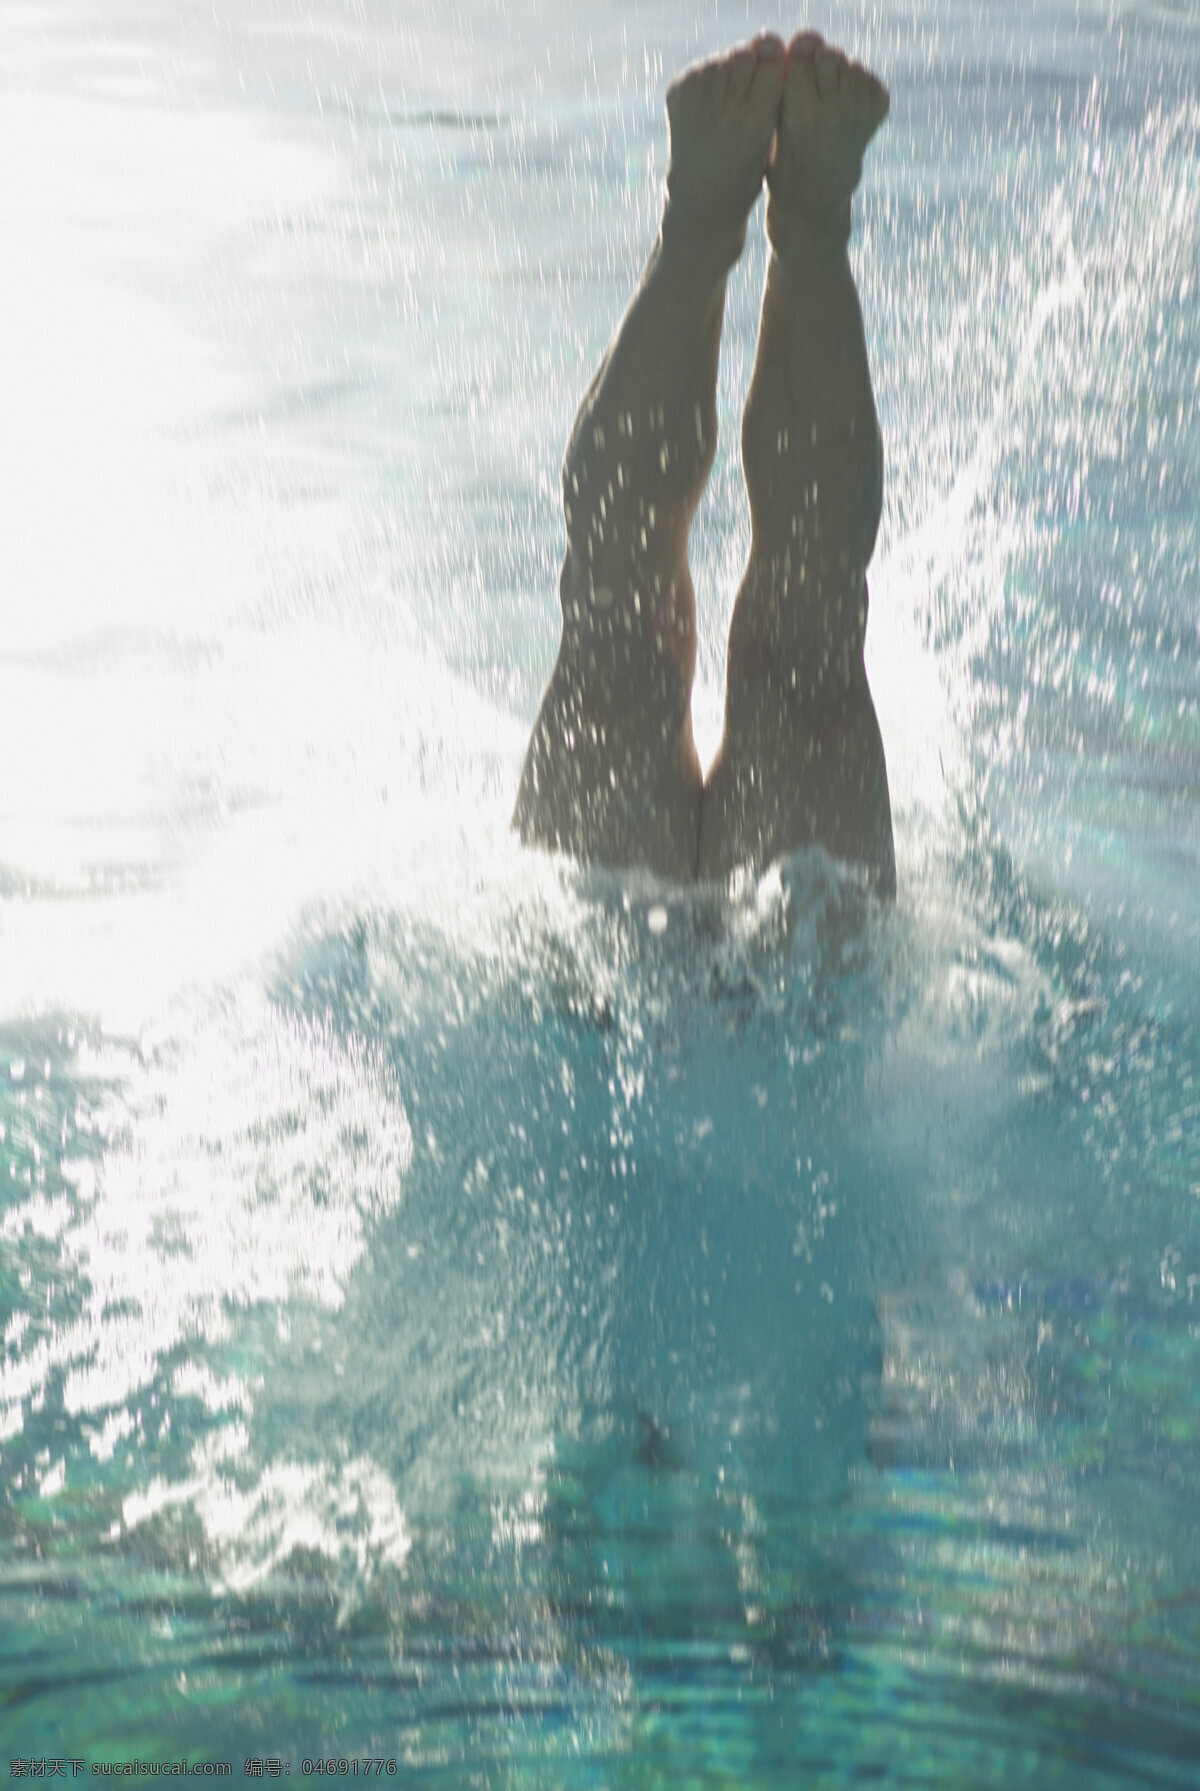 跳水 运动员 体育运动 体育项目 奥运会 奥林匹克 奥运项目 比赛 水花 生活百科